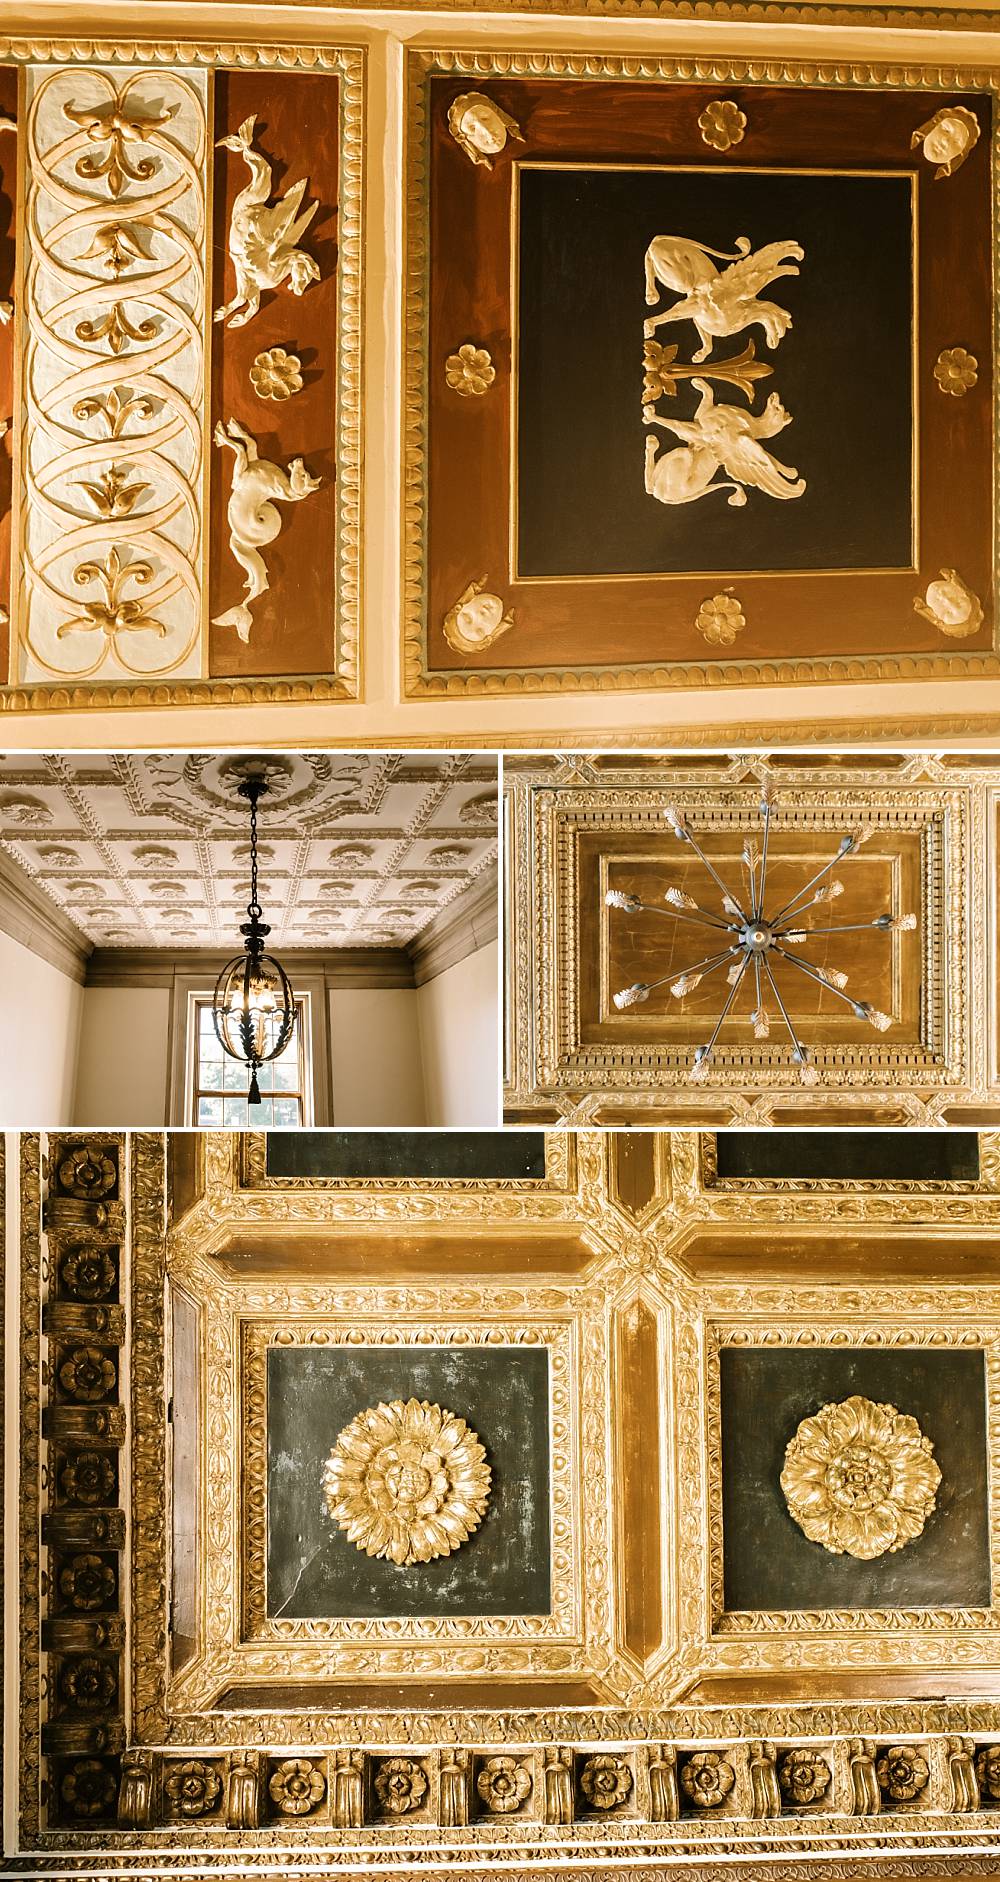 italian renaissance ceiling tiles at war memorial in metro detroit